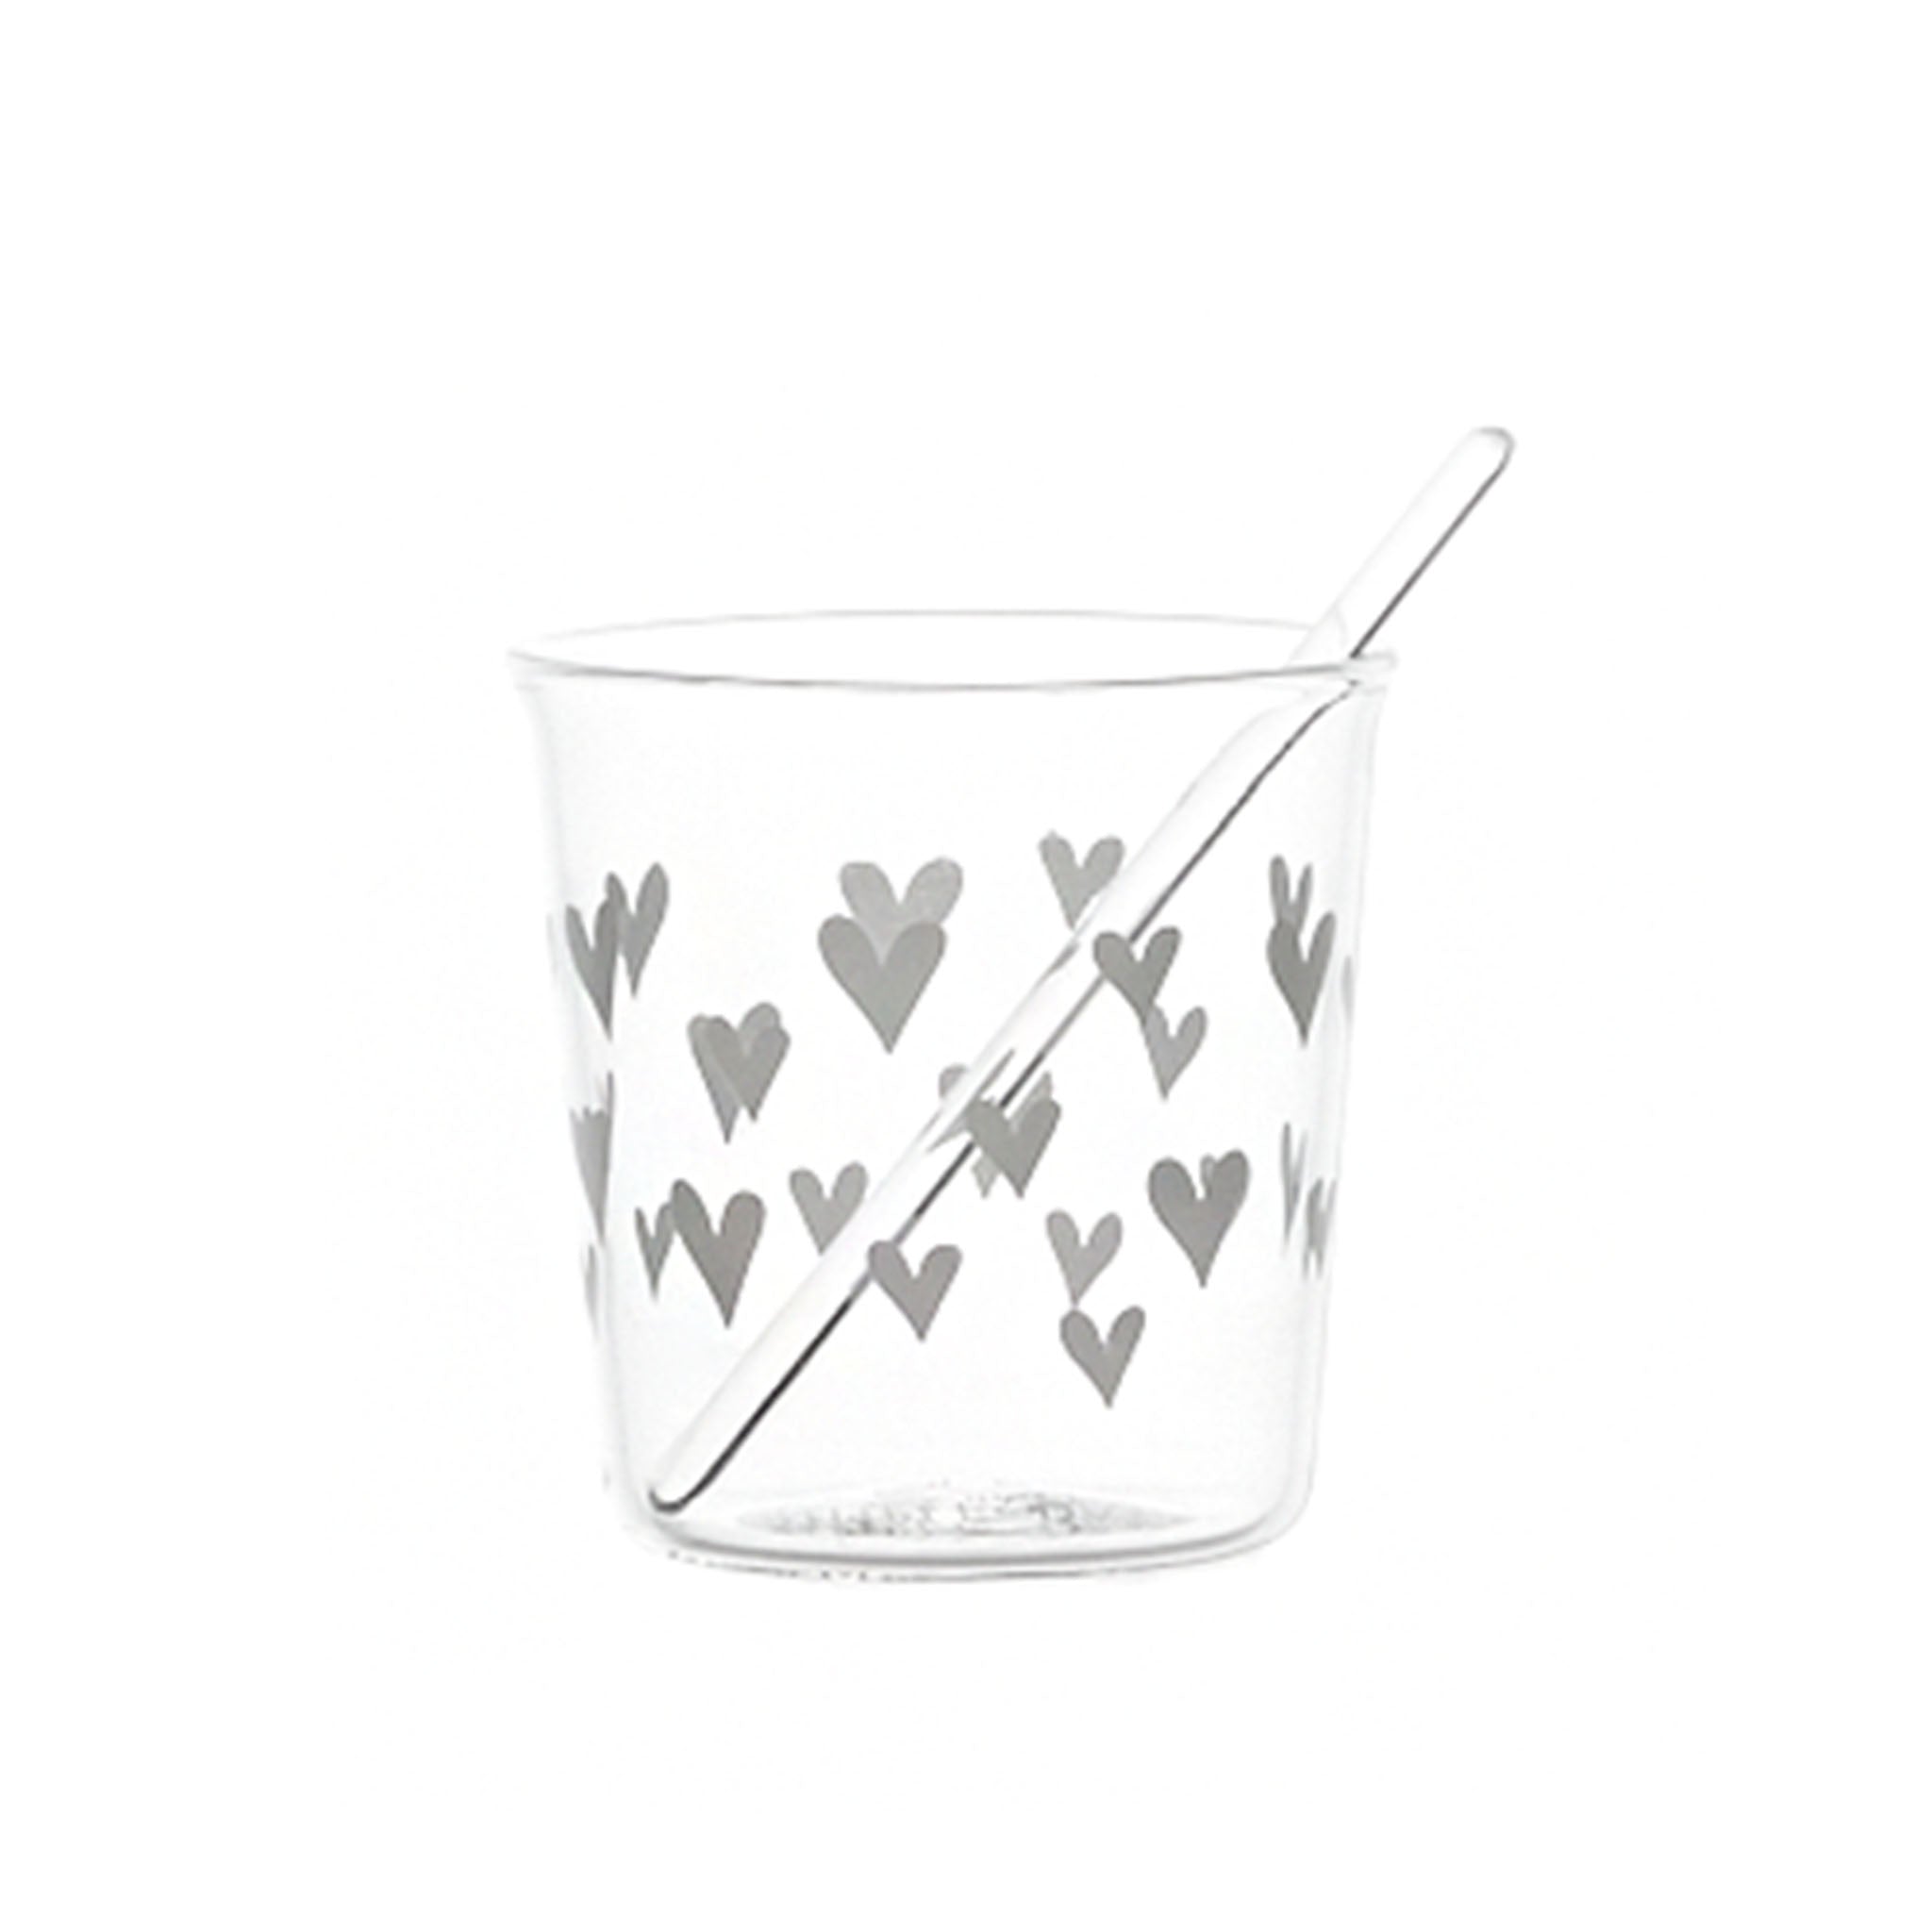 Hearts Espresso Glass in White - Set of 4